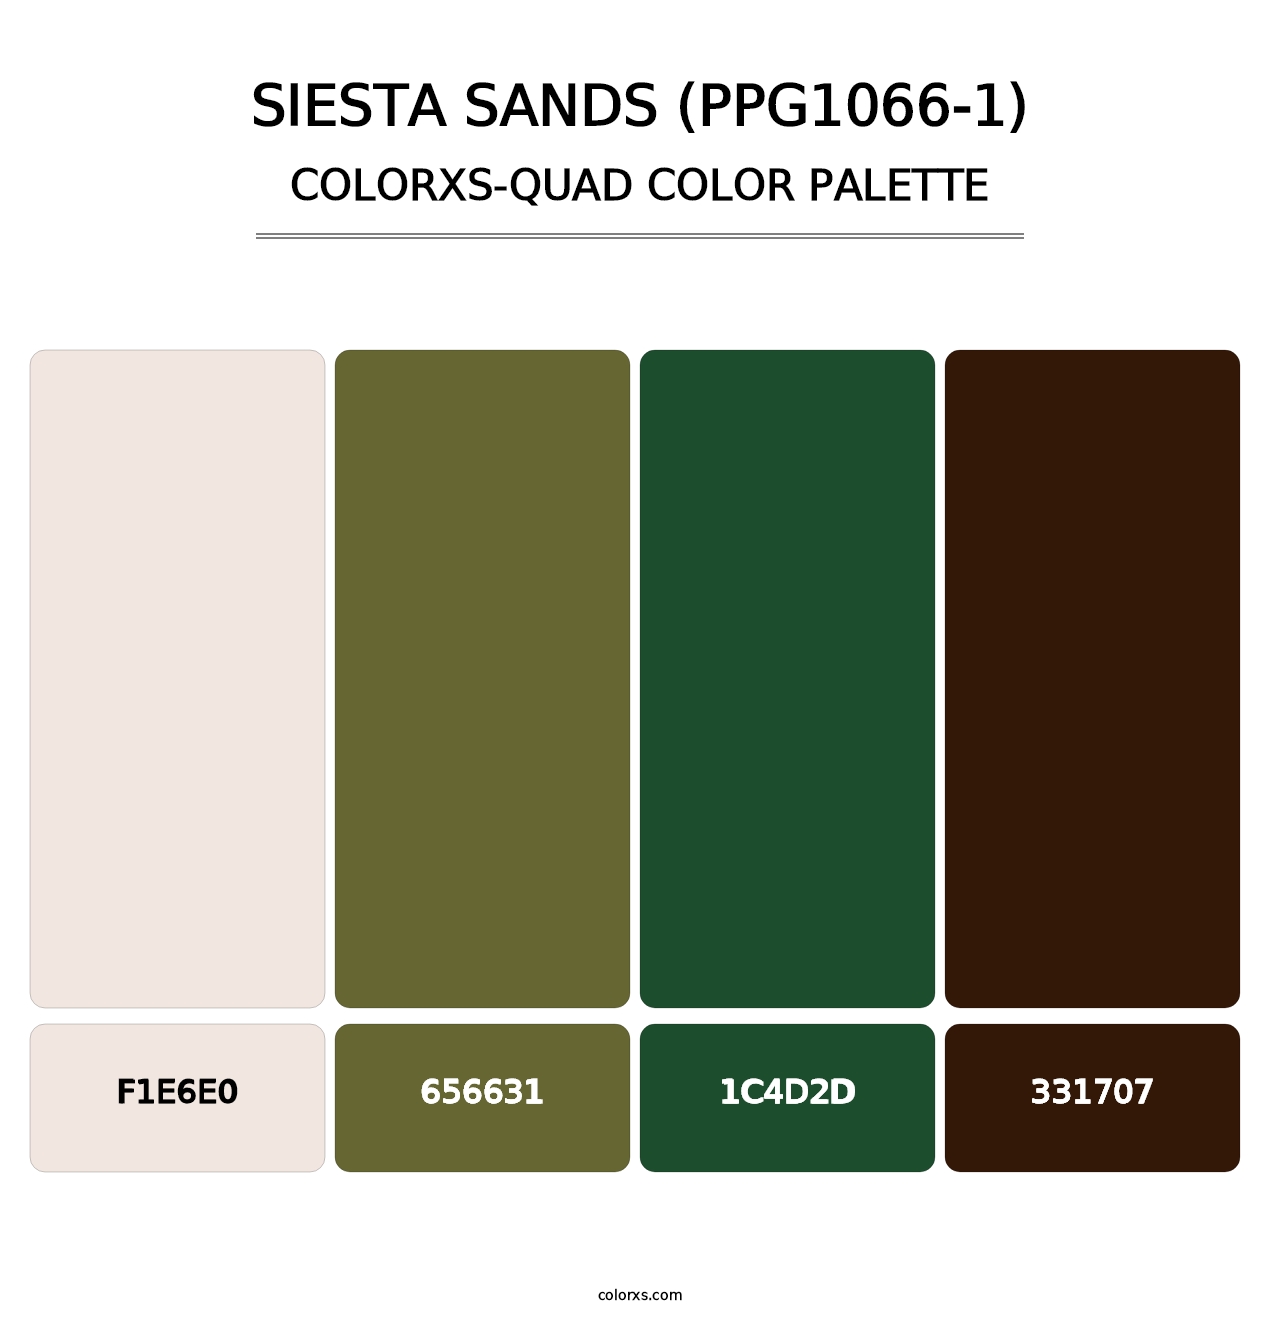 Siesta Sands (PPG1066-1) - Colorxs Quad Palette